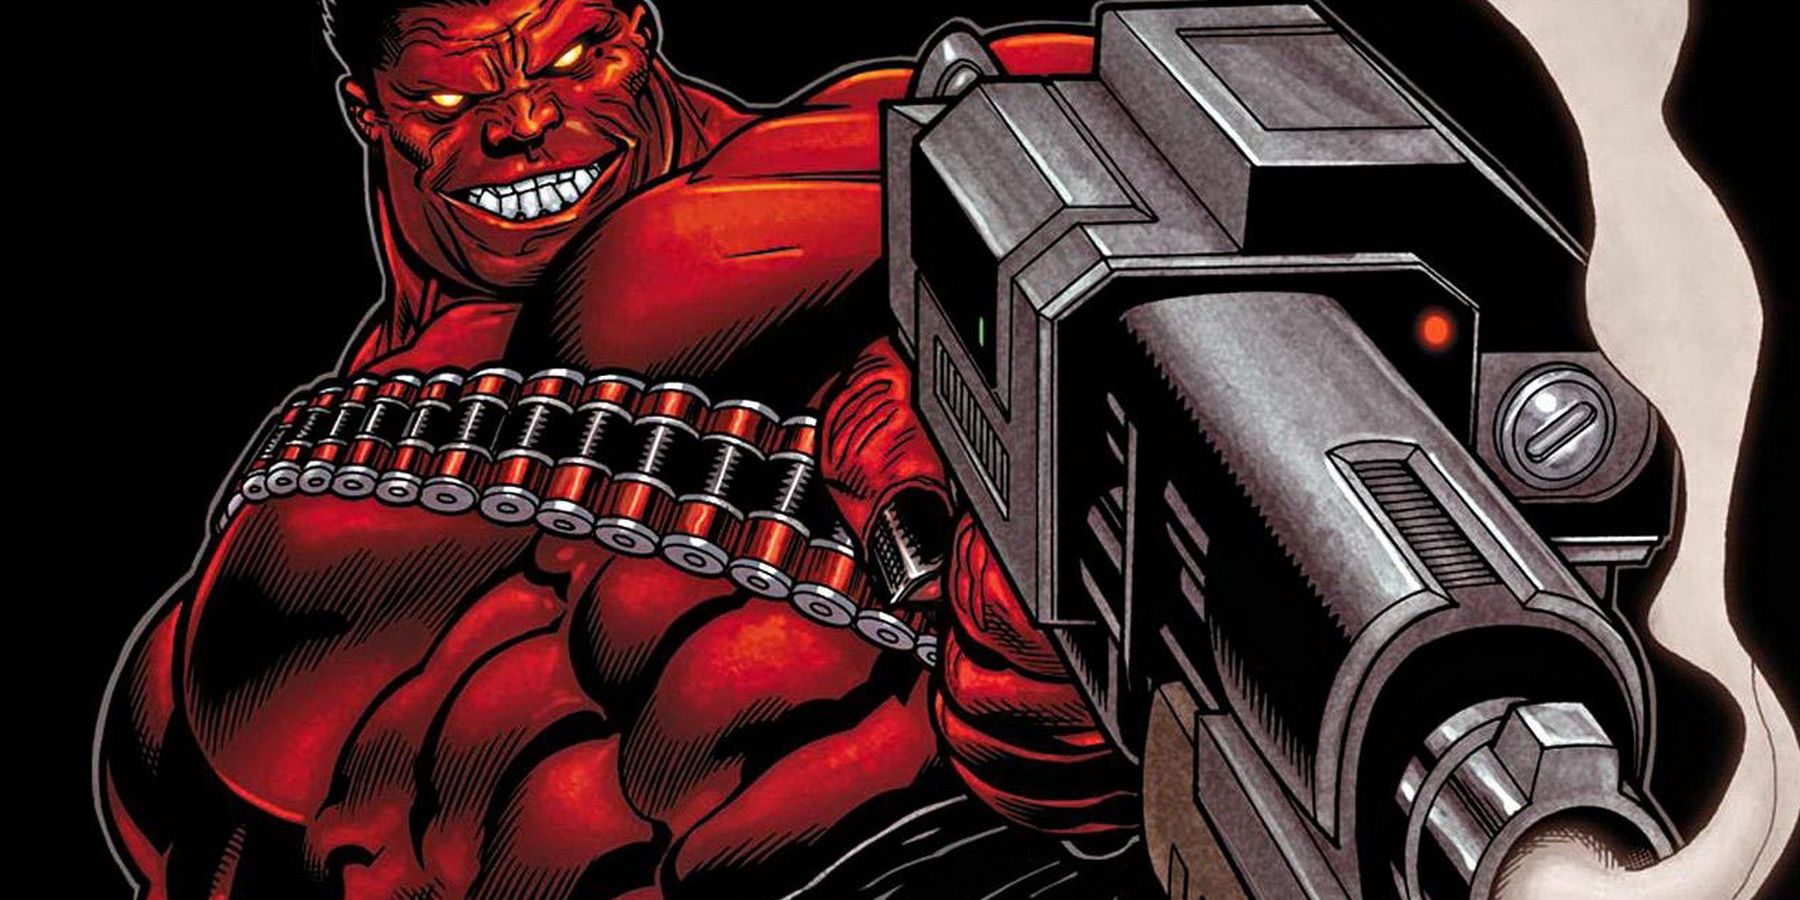 Red Hulk holding a smoking gun